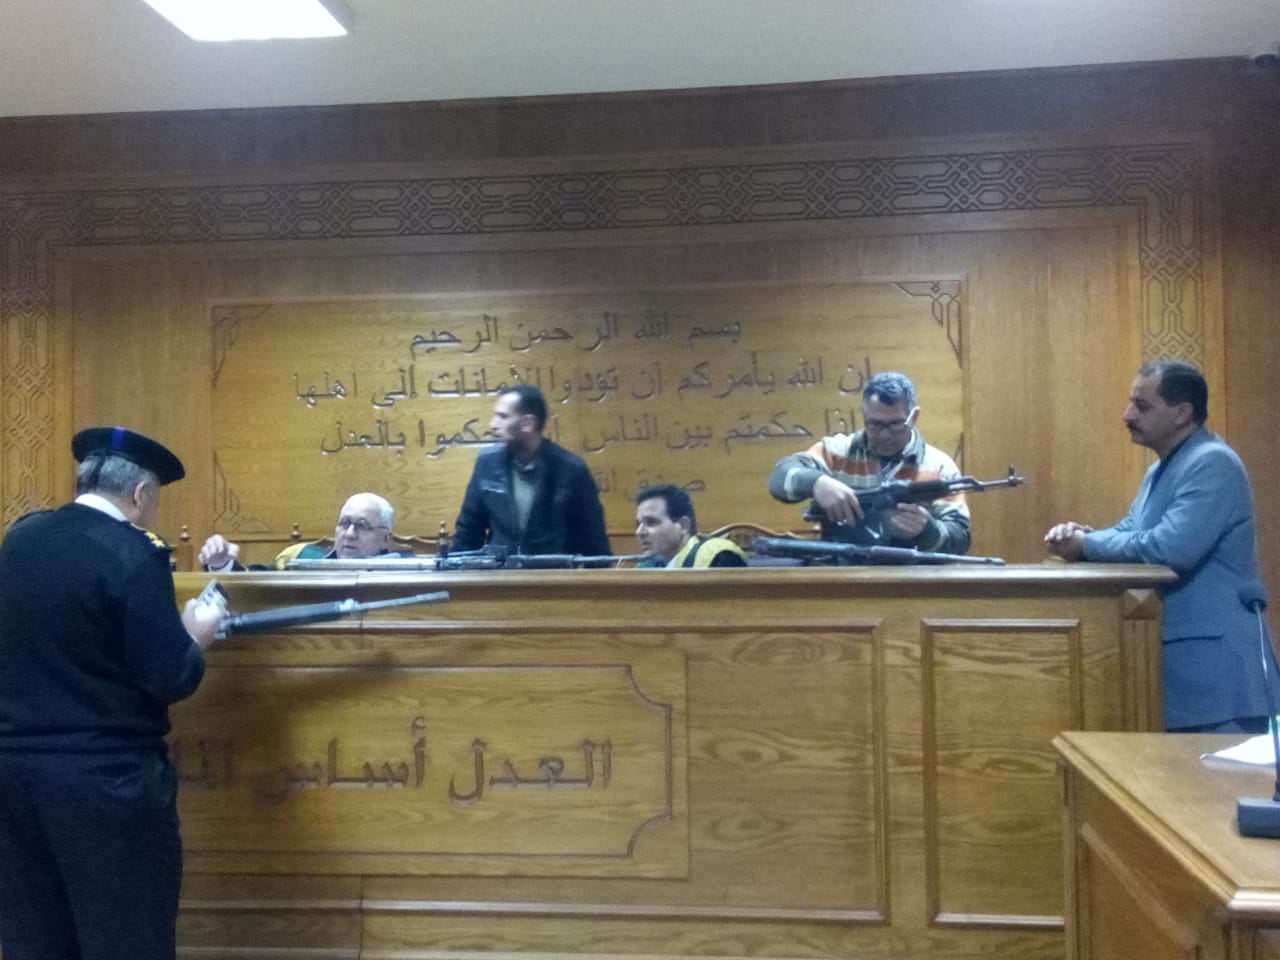 هيئة المحكمة برئاسة المستشار محمد سعيد الشربينى تفض احراز العائدون من ليبيا (2)